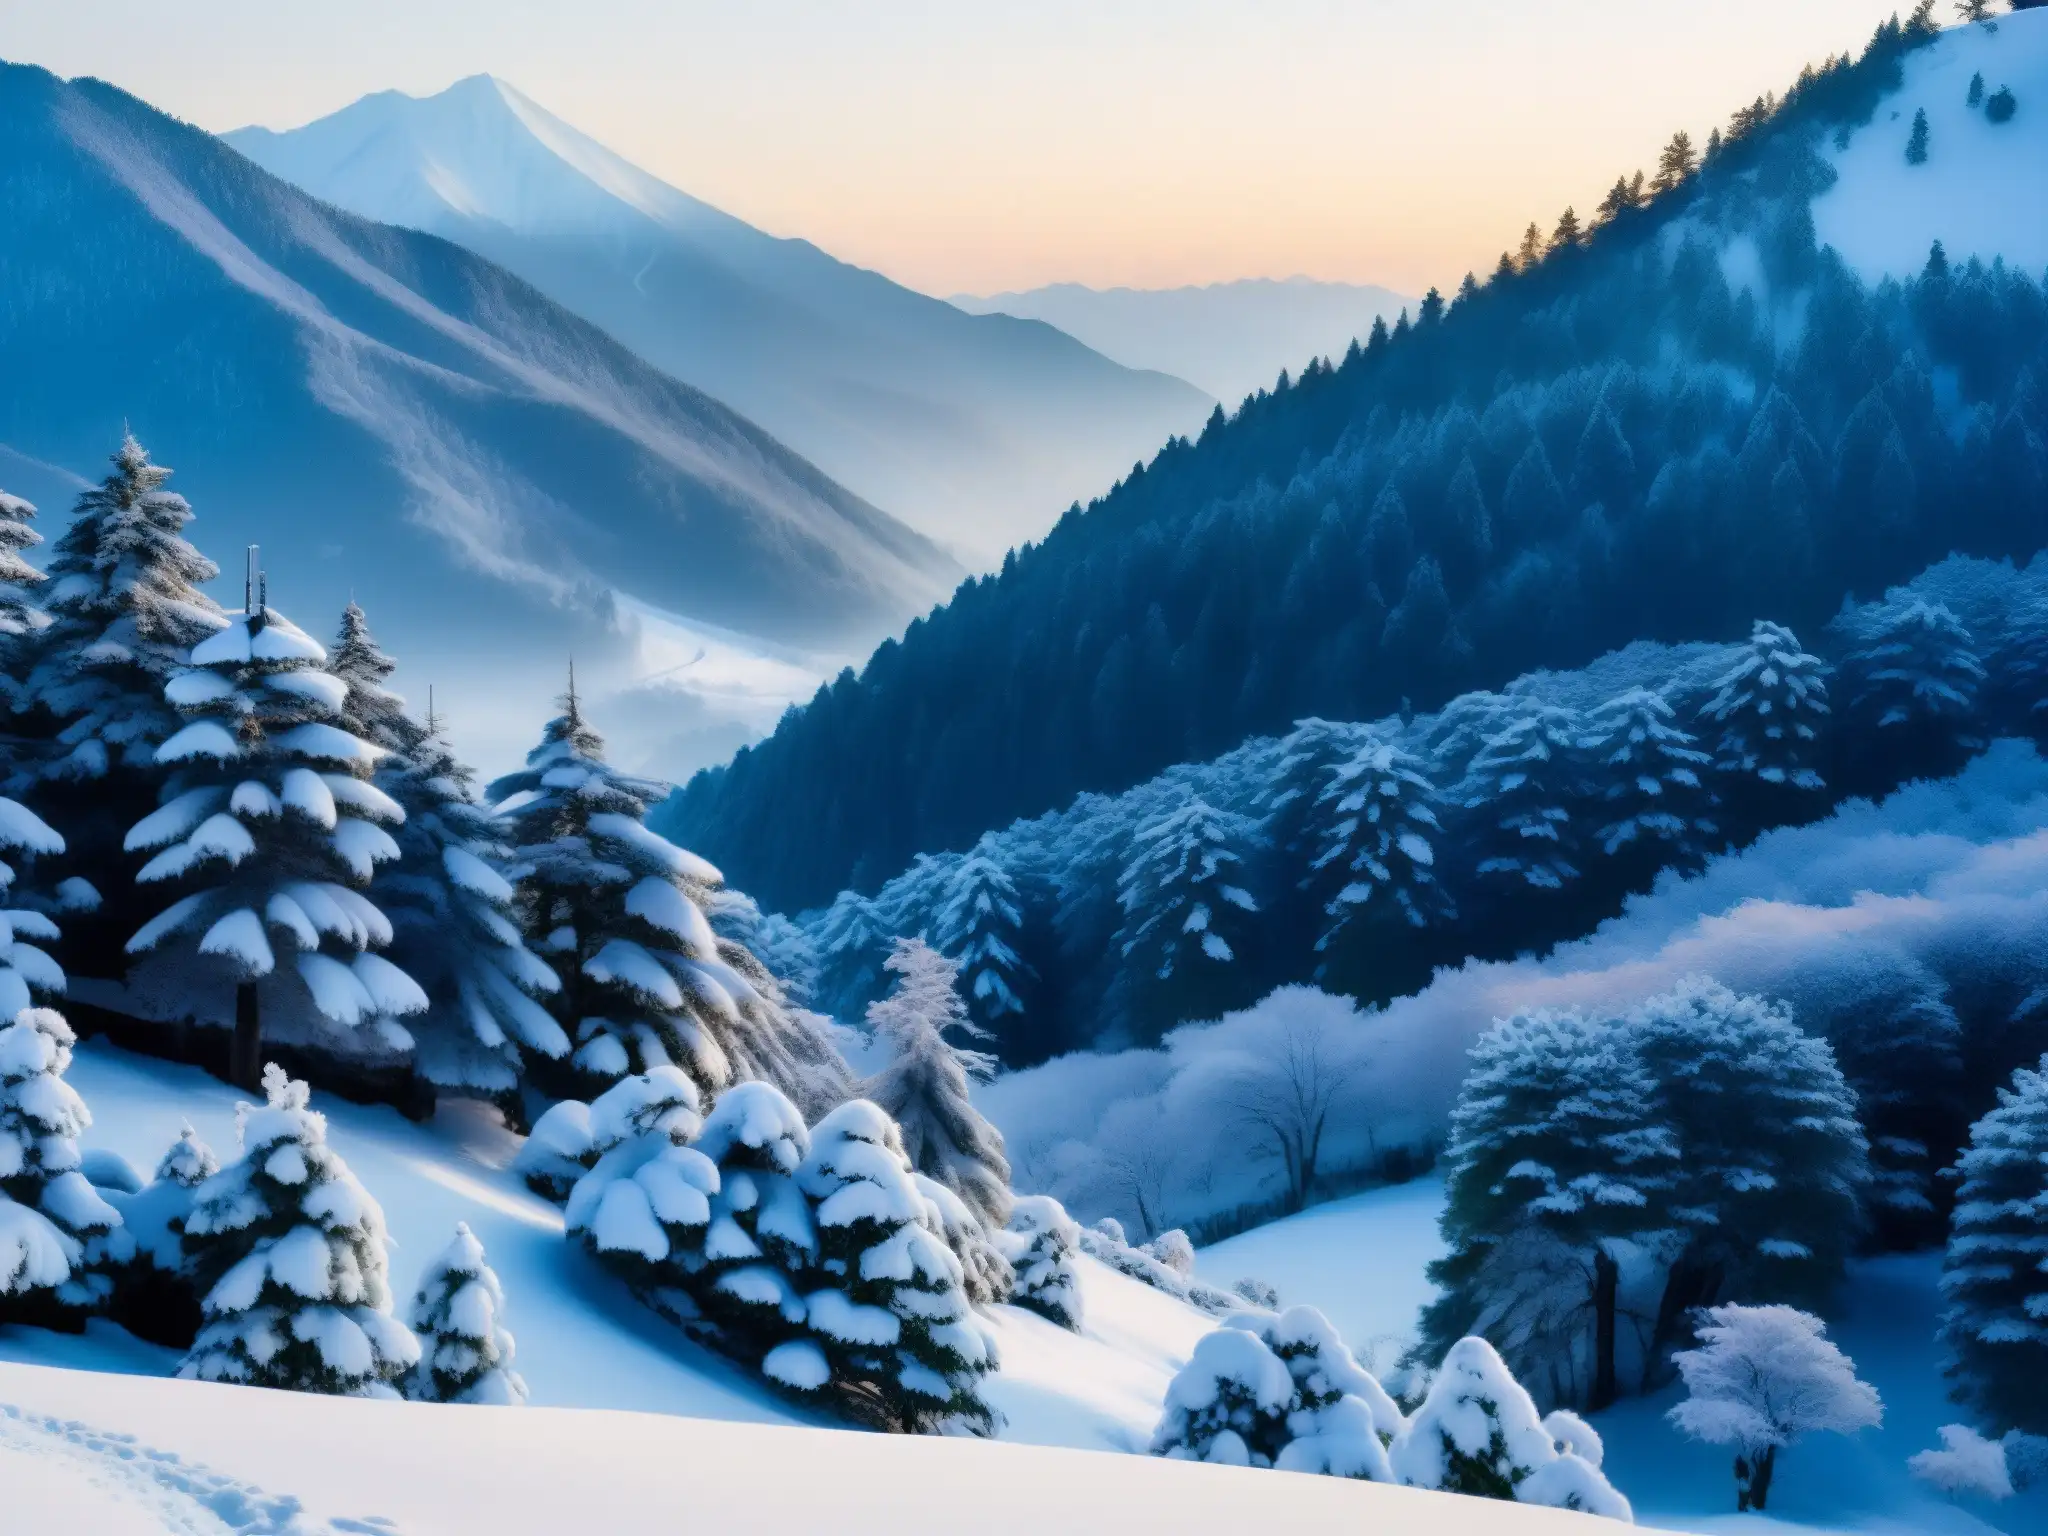 Imagen impresionante de un paisaje nevado en las montañas de Japón, evocando la mística leyenda japonesa de Yukionna